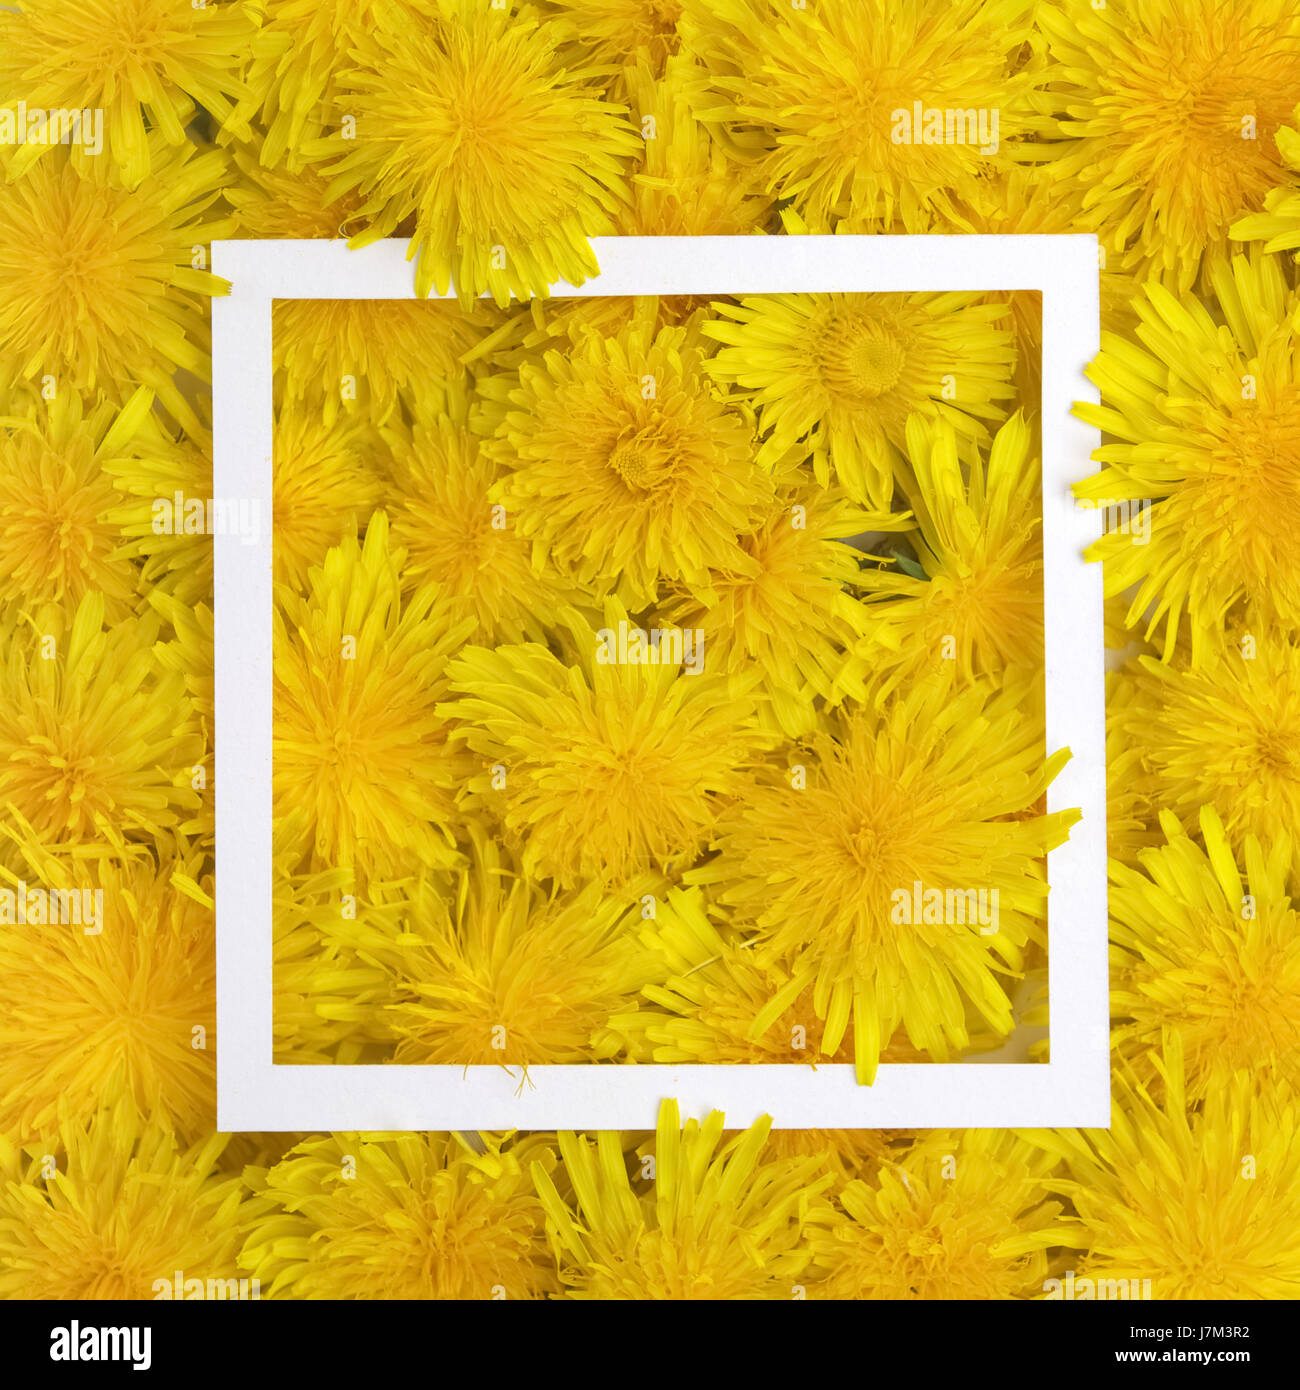 Marco blanco sobre fondo de flores amarillas. Primavera, verano concepto. Sentar planas, vista superior Foto de stock